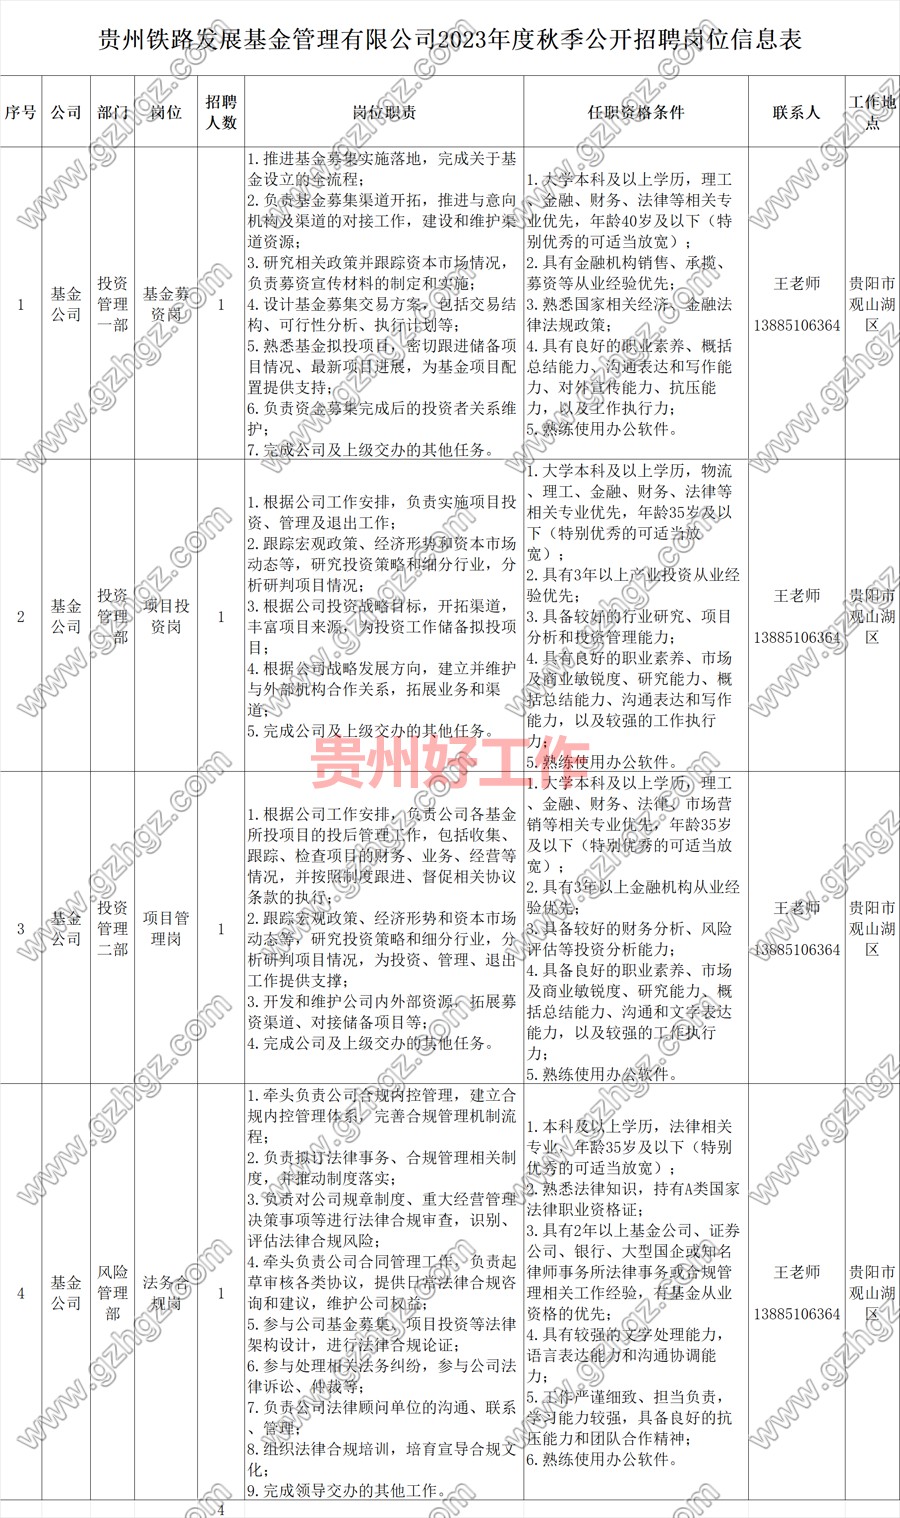 贵州铁投集团控股二级子公司贵州铁路发展基金管理有限公司2023年度秋季公开招聘公告